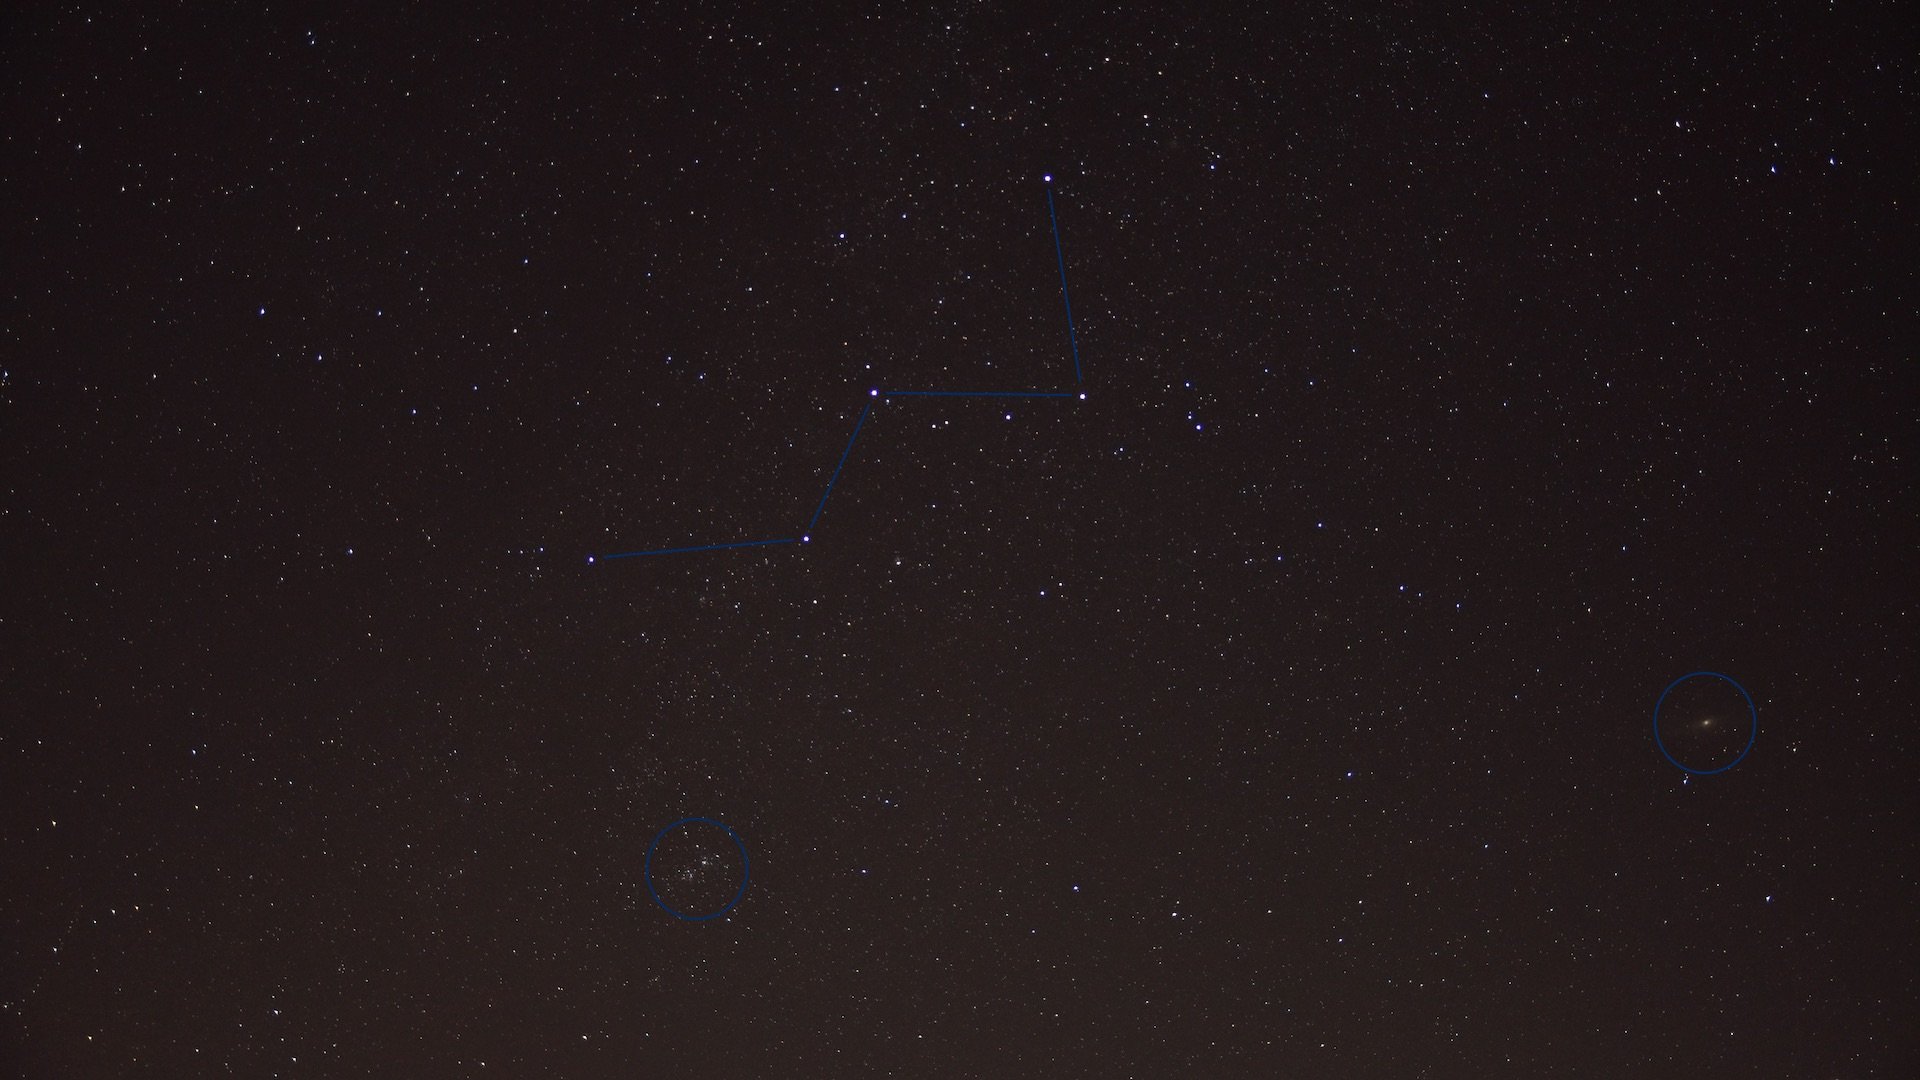 Het sterrenbeeld Cassiopeia. Onbewerkte enkele opname met 30 seconden belichting bij ISO 800. De dubbelcluster h & chi, het Andromeda-stelsel en vele andere deepsky-objecten zijn zichtbaar. Foto: Marcus Schenk